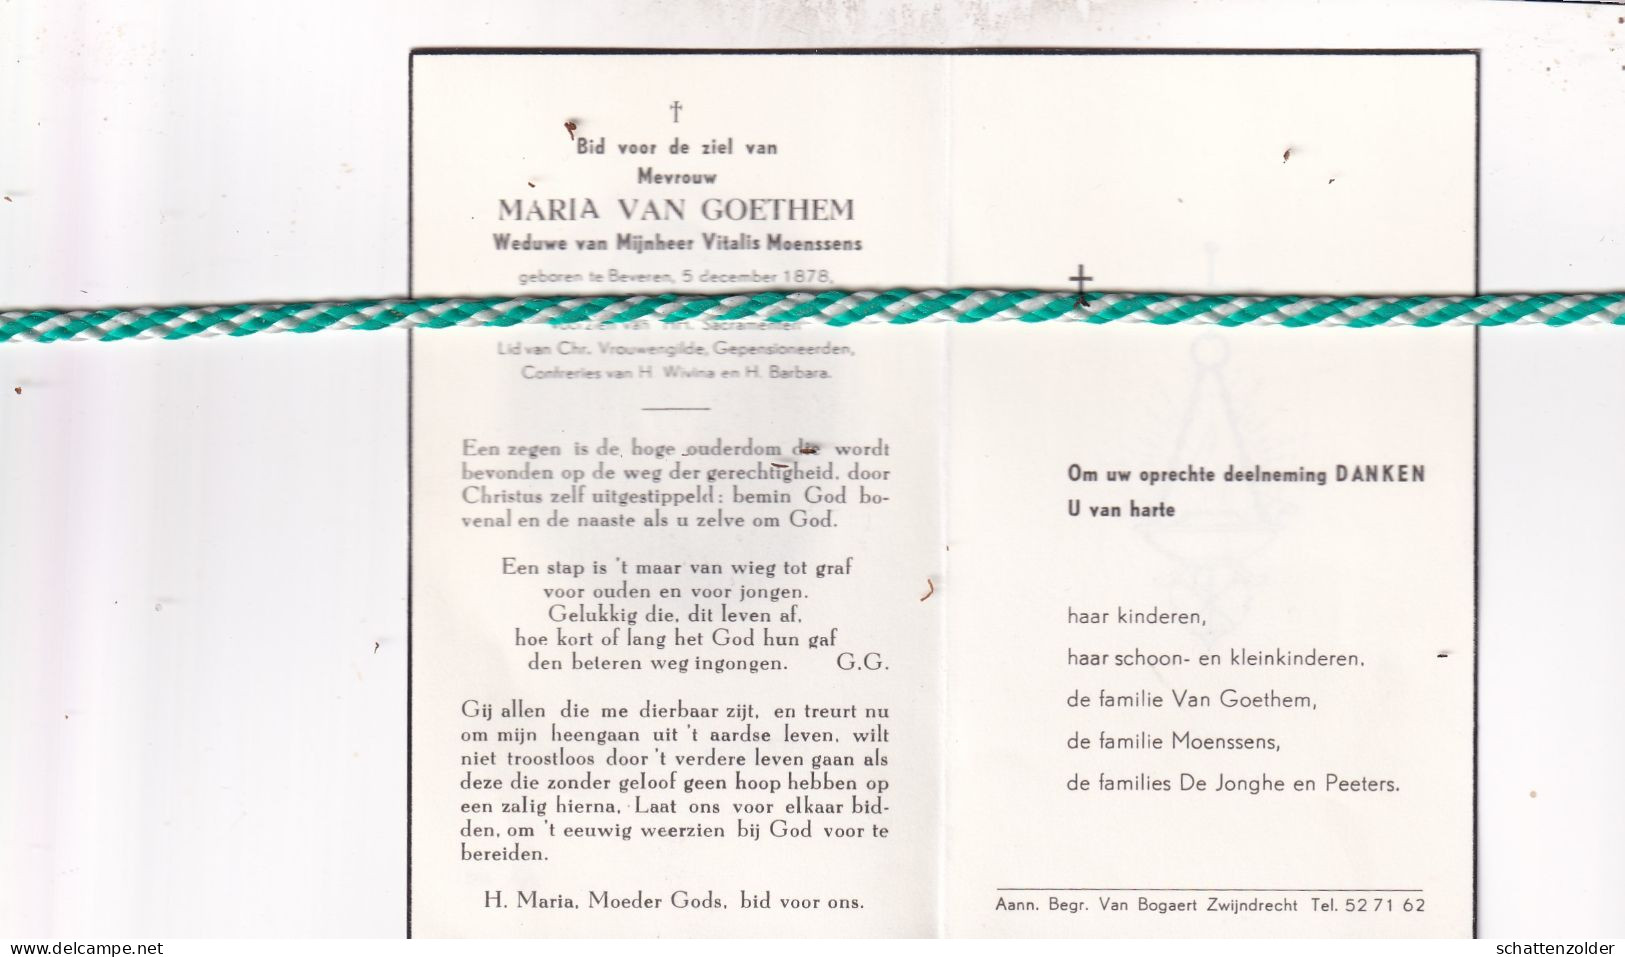 Maria Van Goethem-Moenssens, Beveren 1878, Zwijndrecht 1962 - Décès